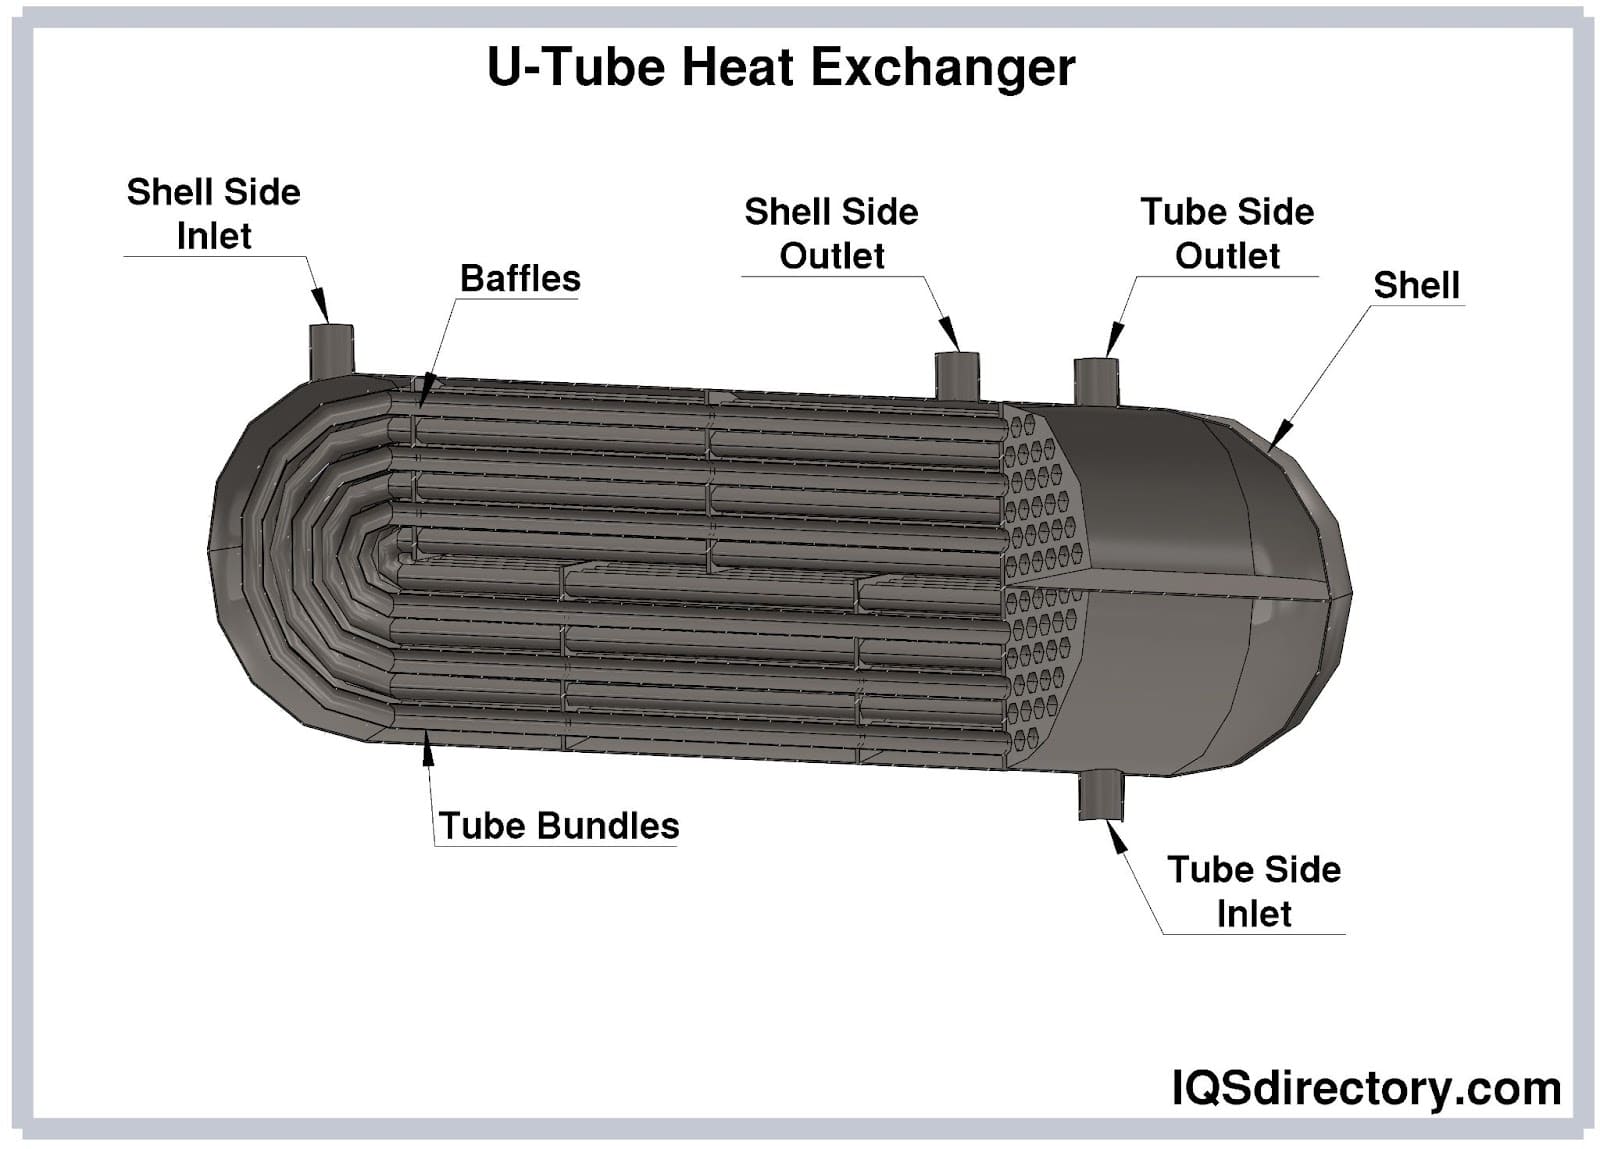 U-Tube Heat Exchanger